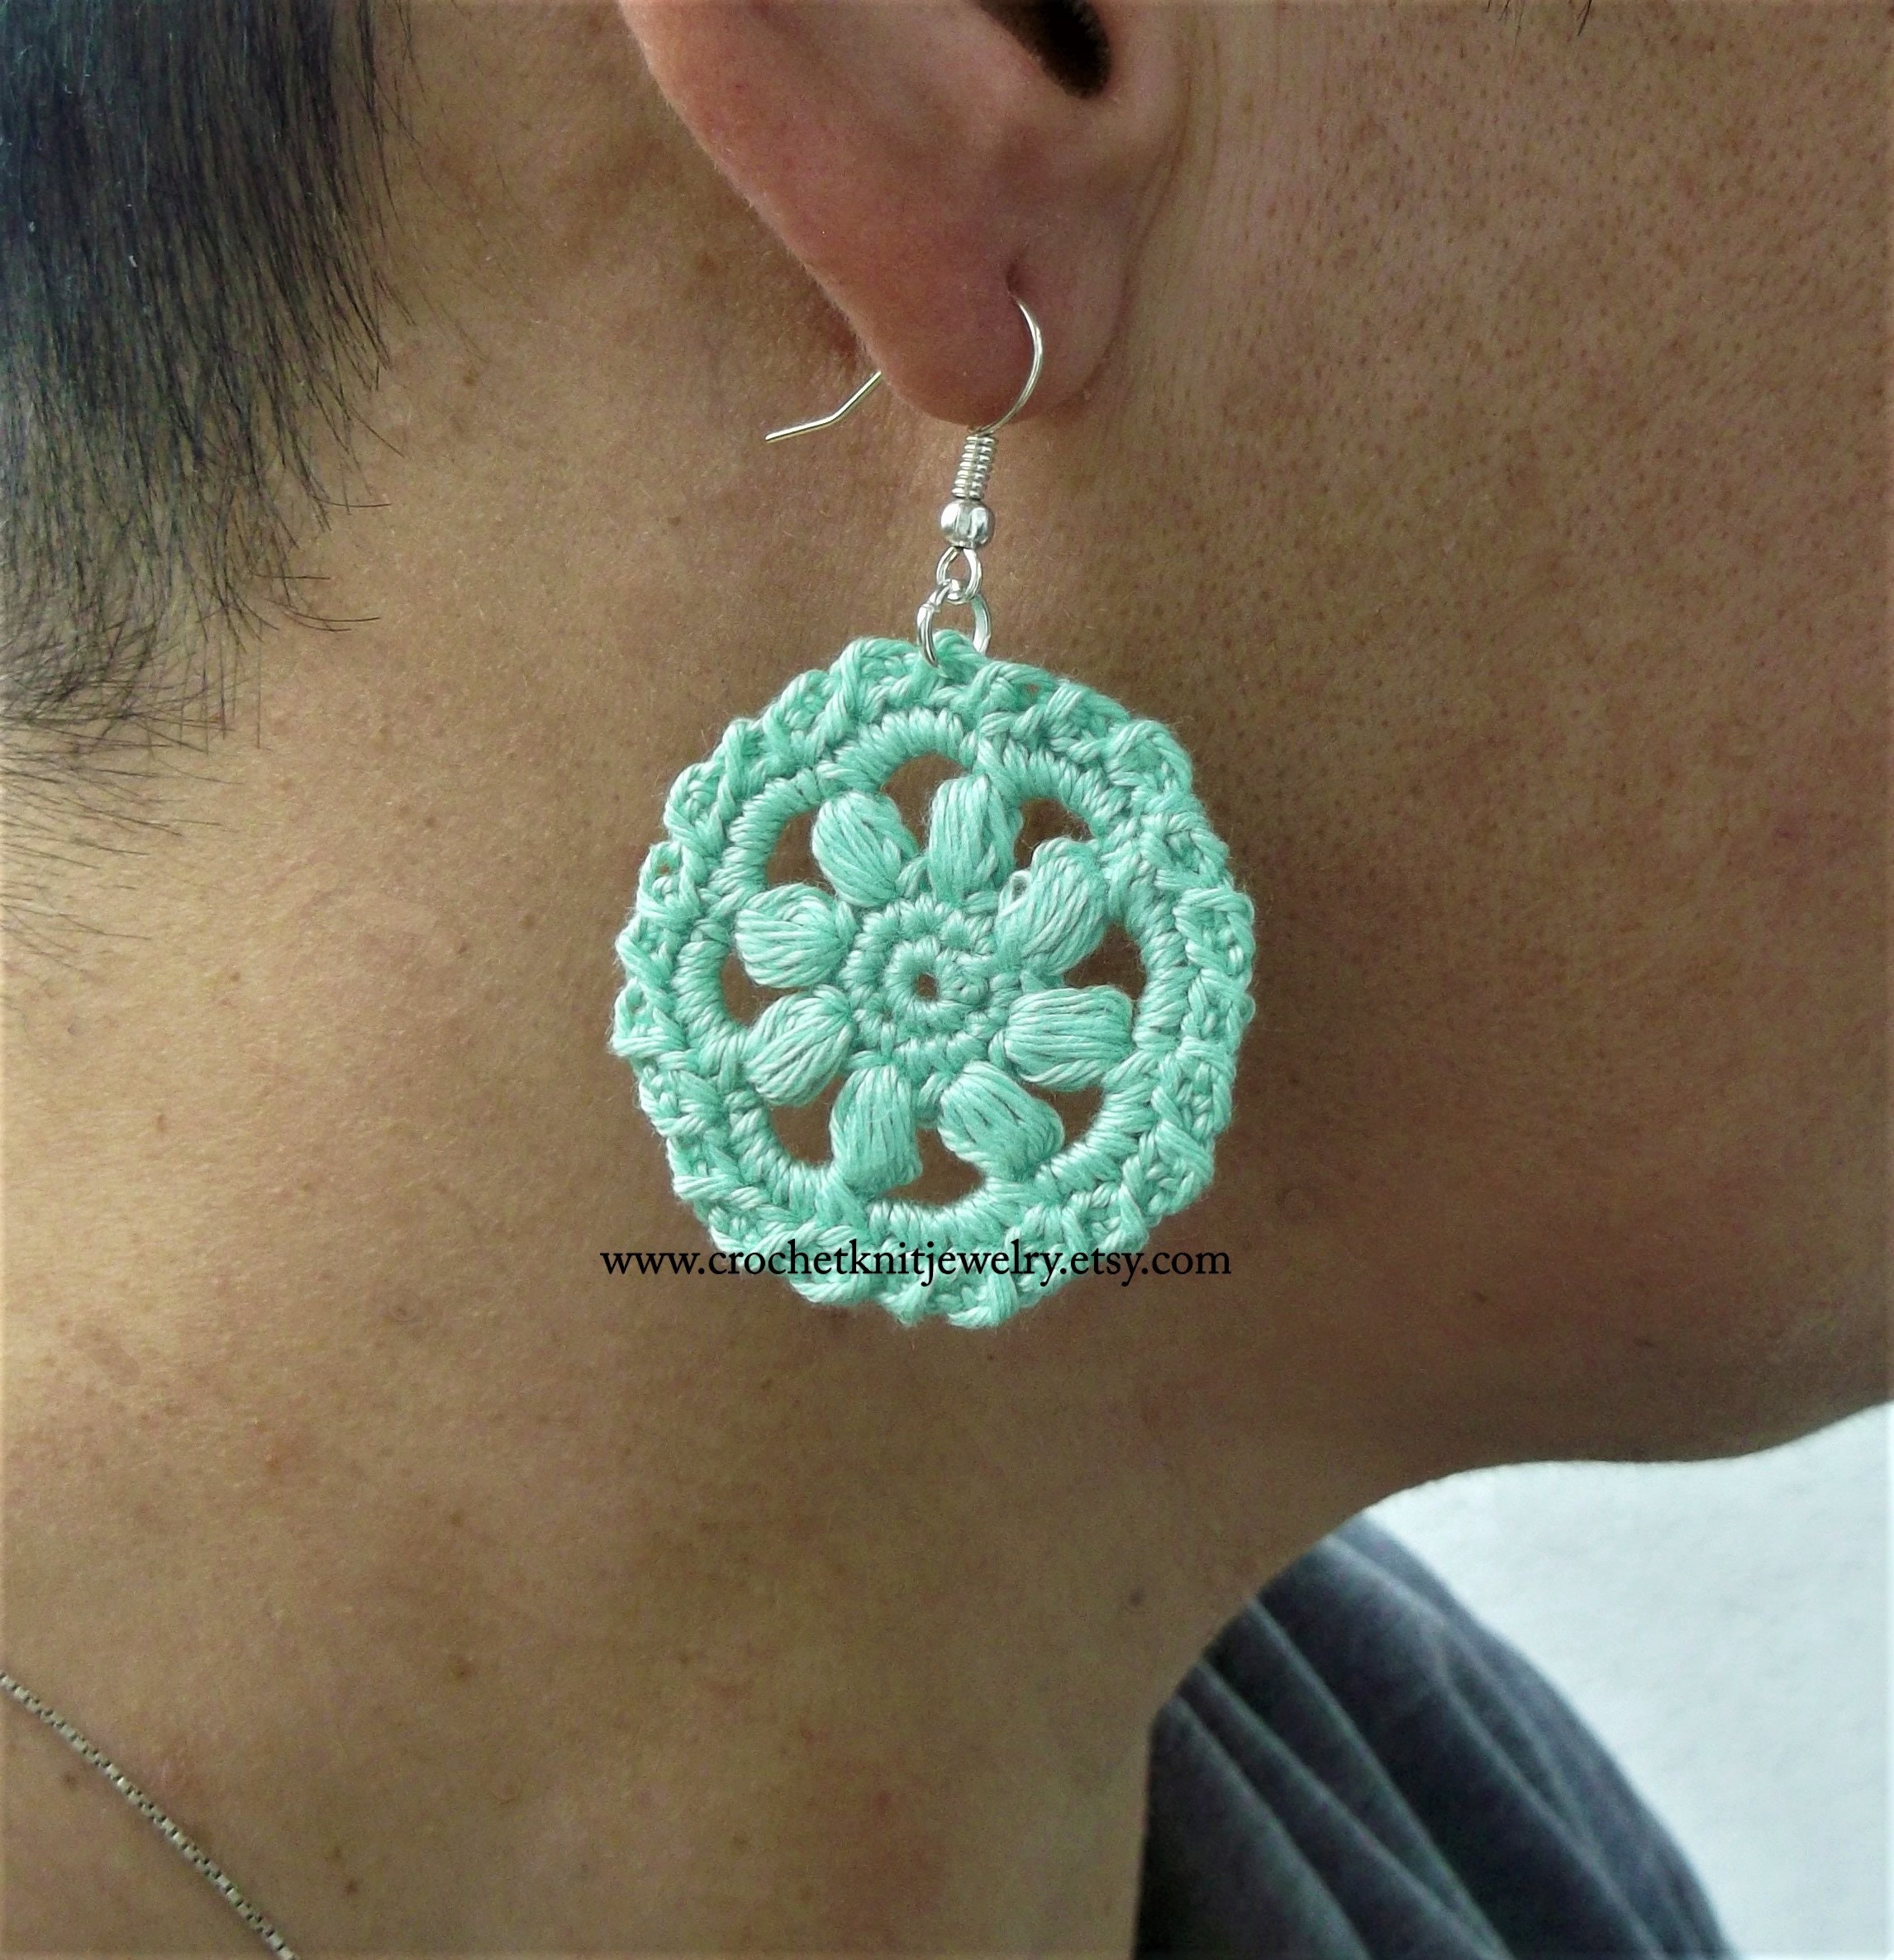 Little Treasures: Flower Crochet Earrings - free pattern